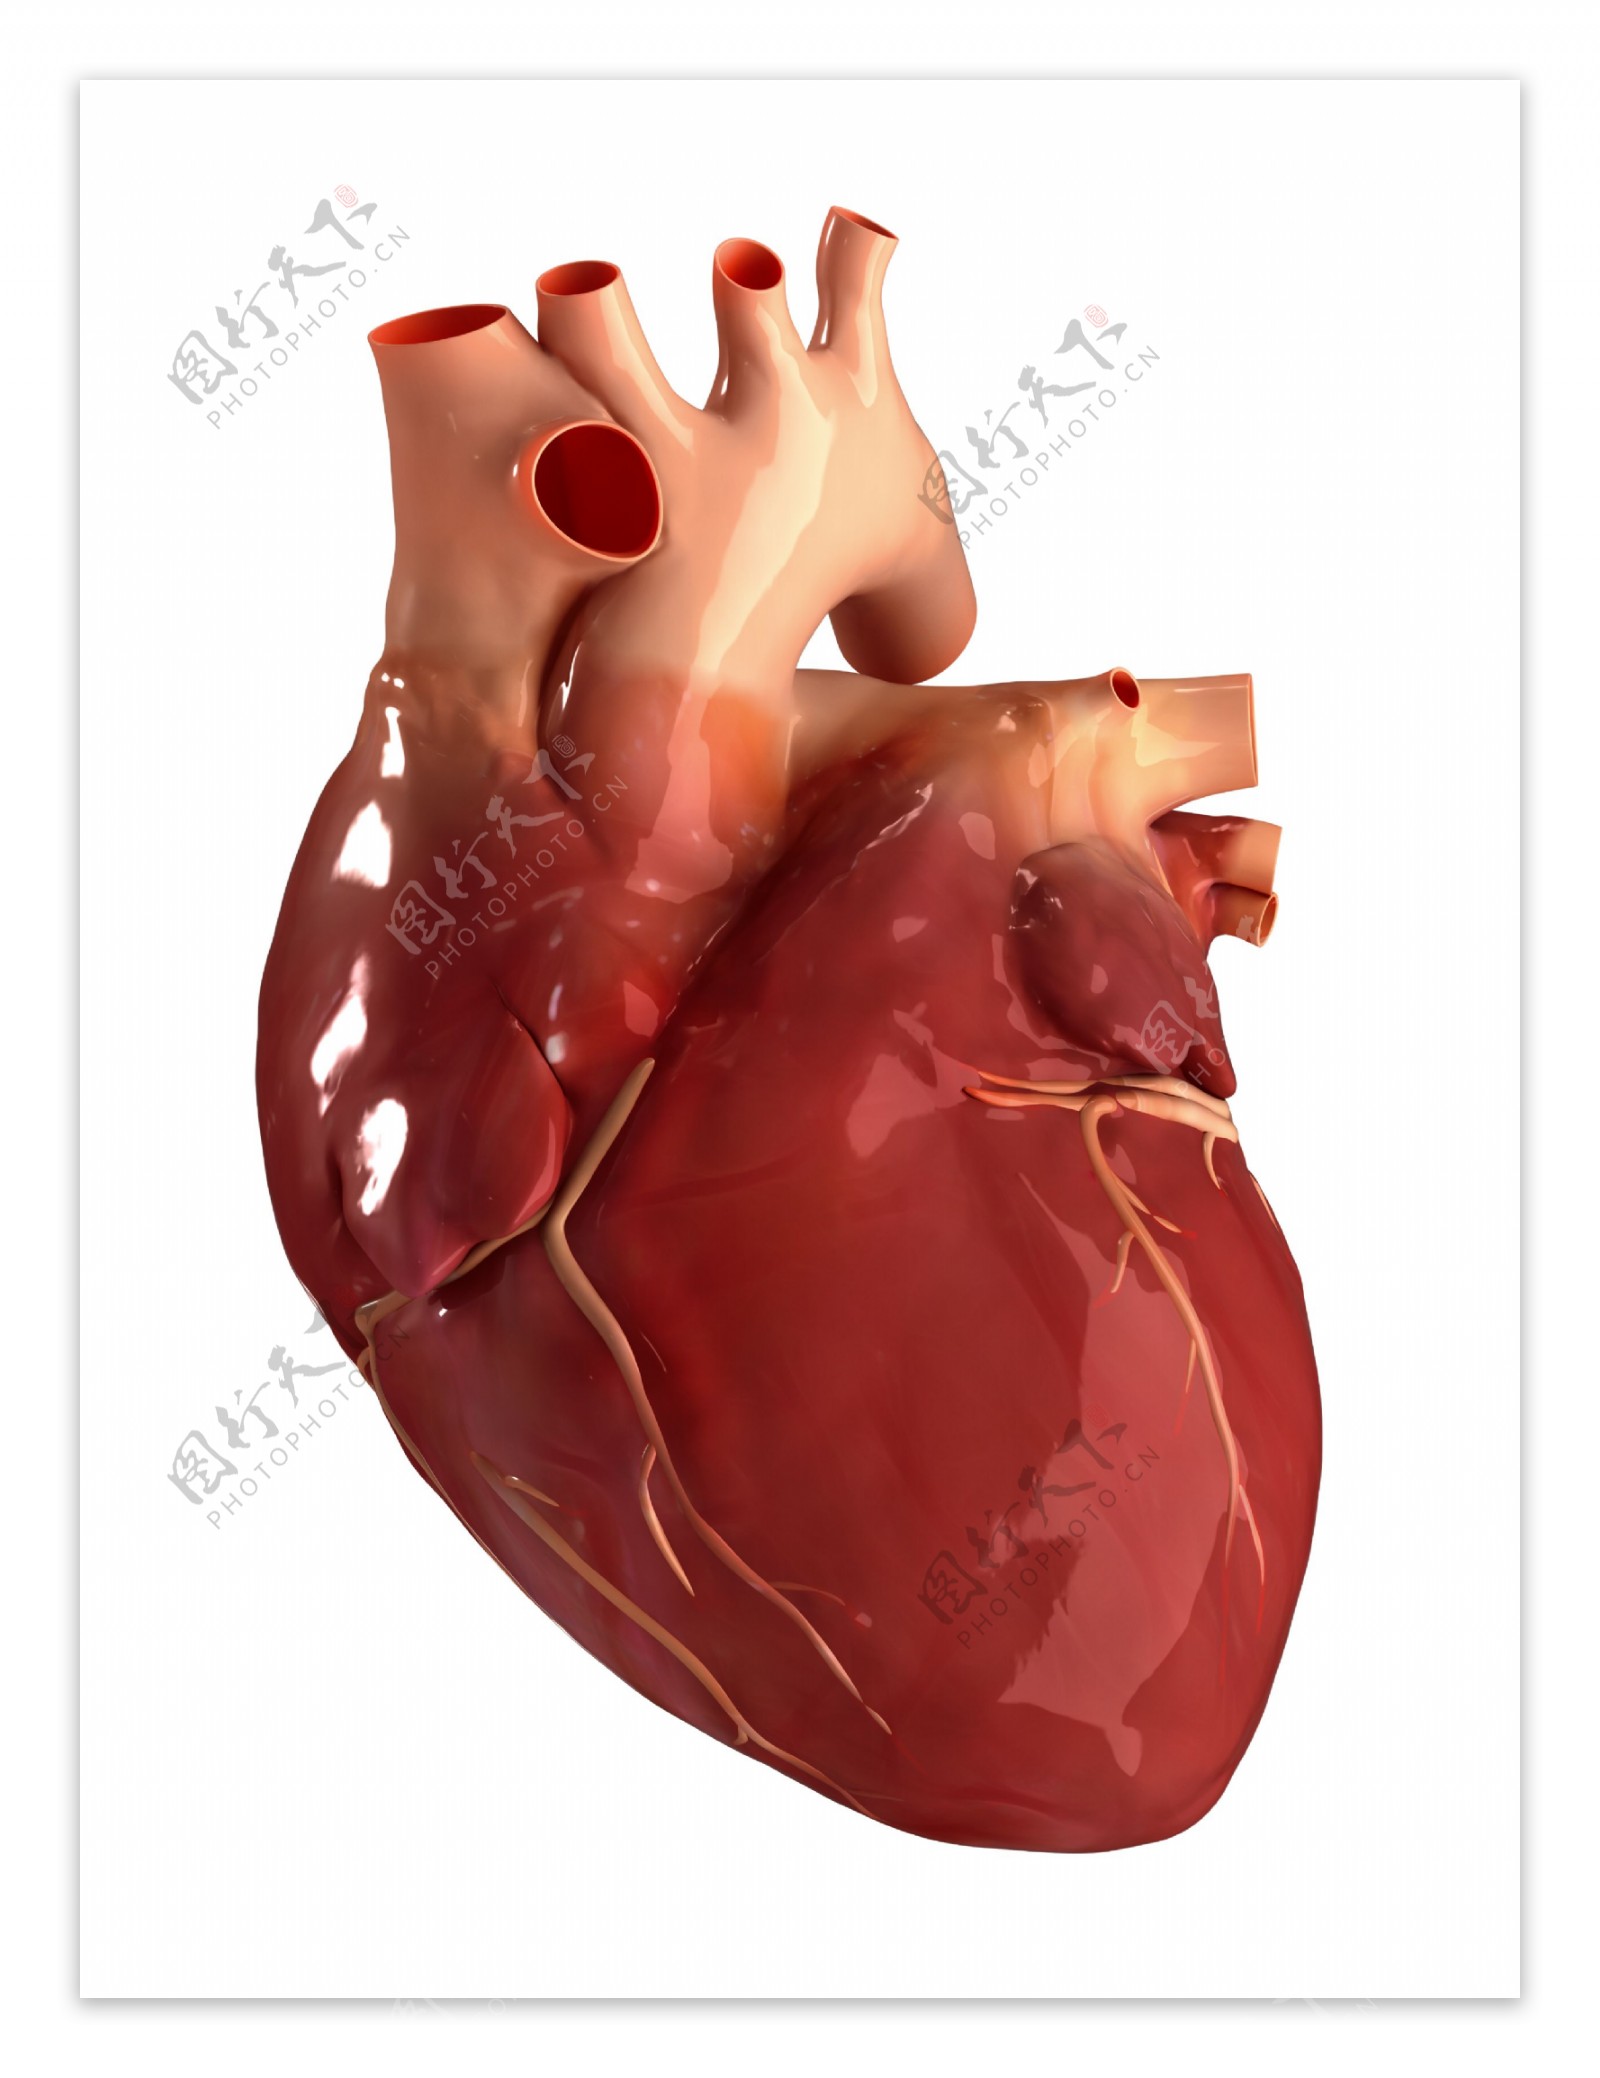 心脏器官模型图片